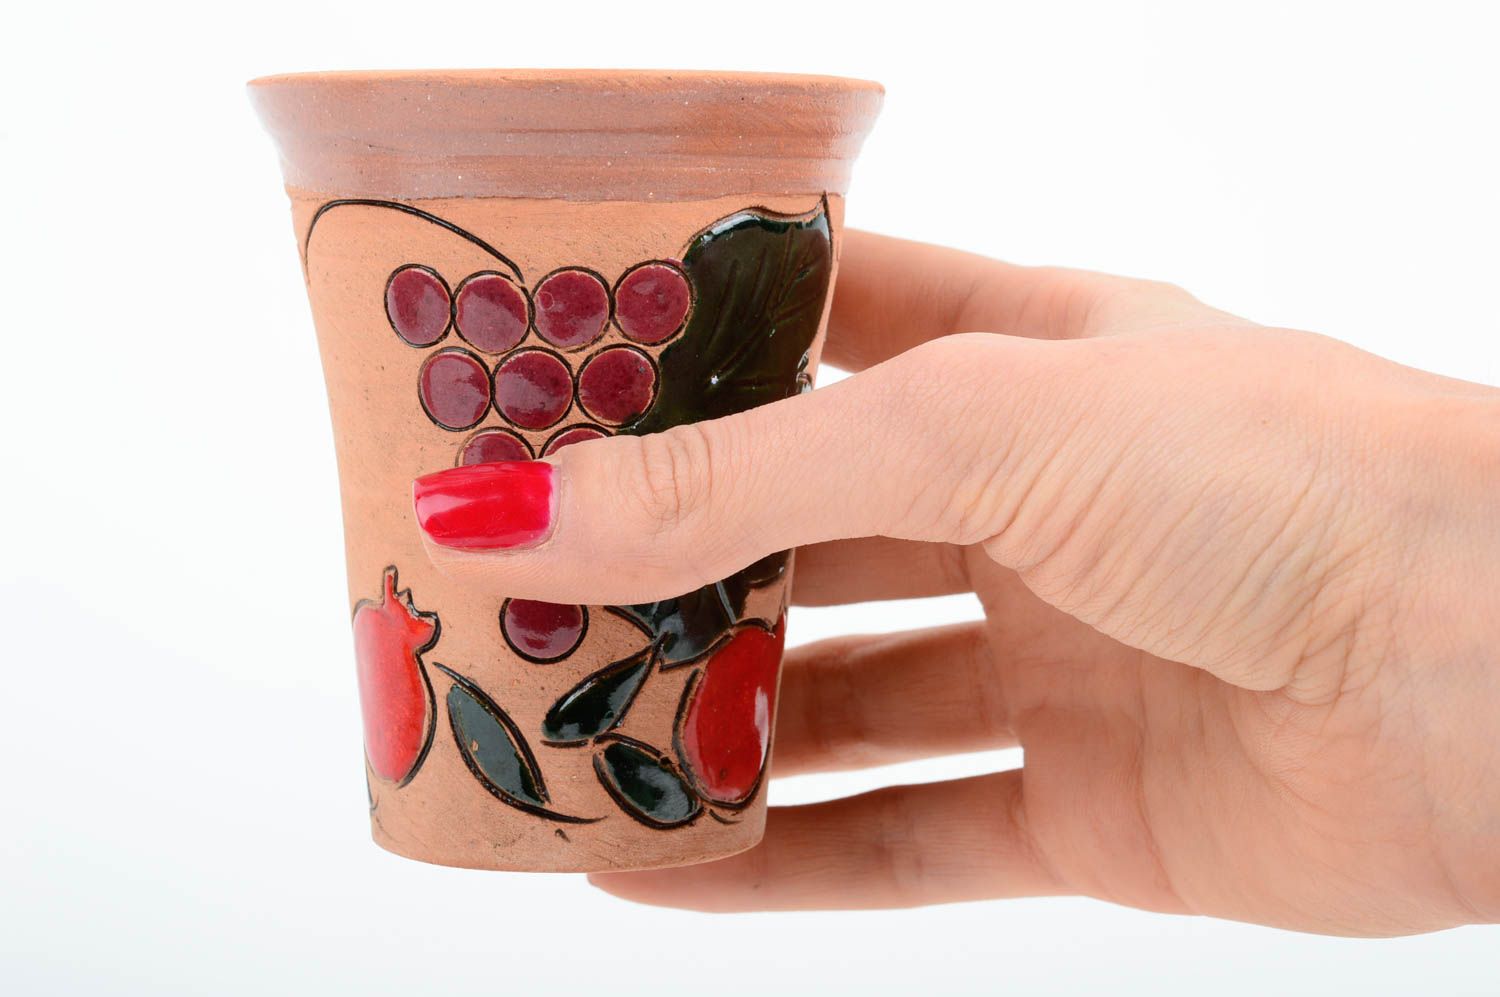 Vaso de cerámica pintado hecho a mano utensilio de cocina vajilla original  foto 2